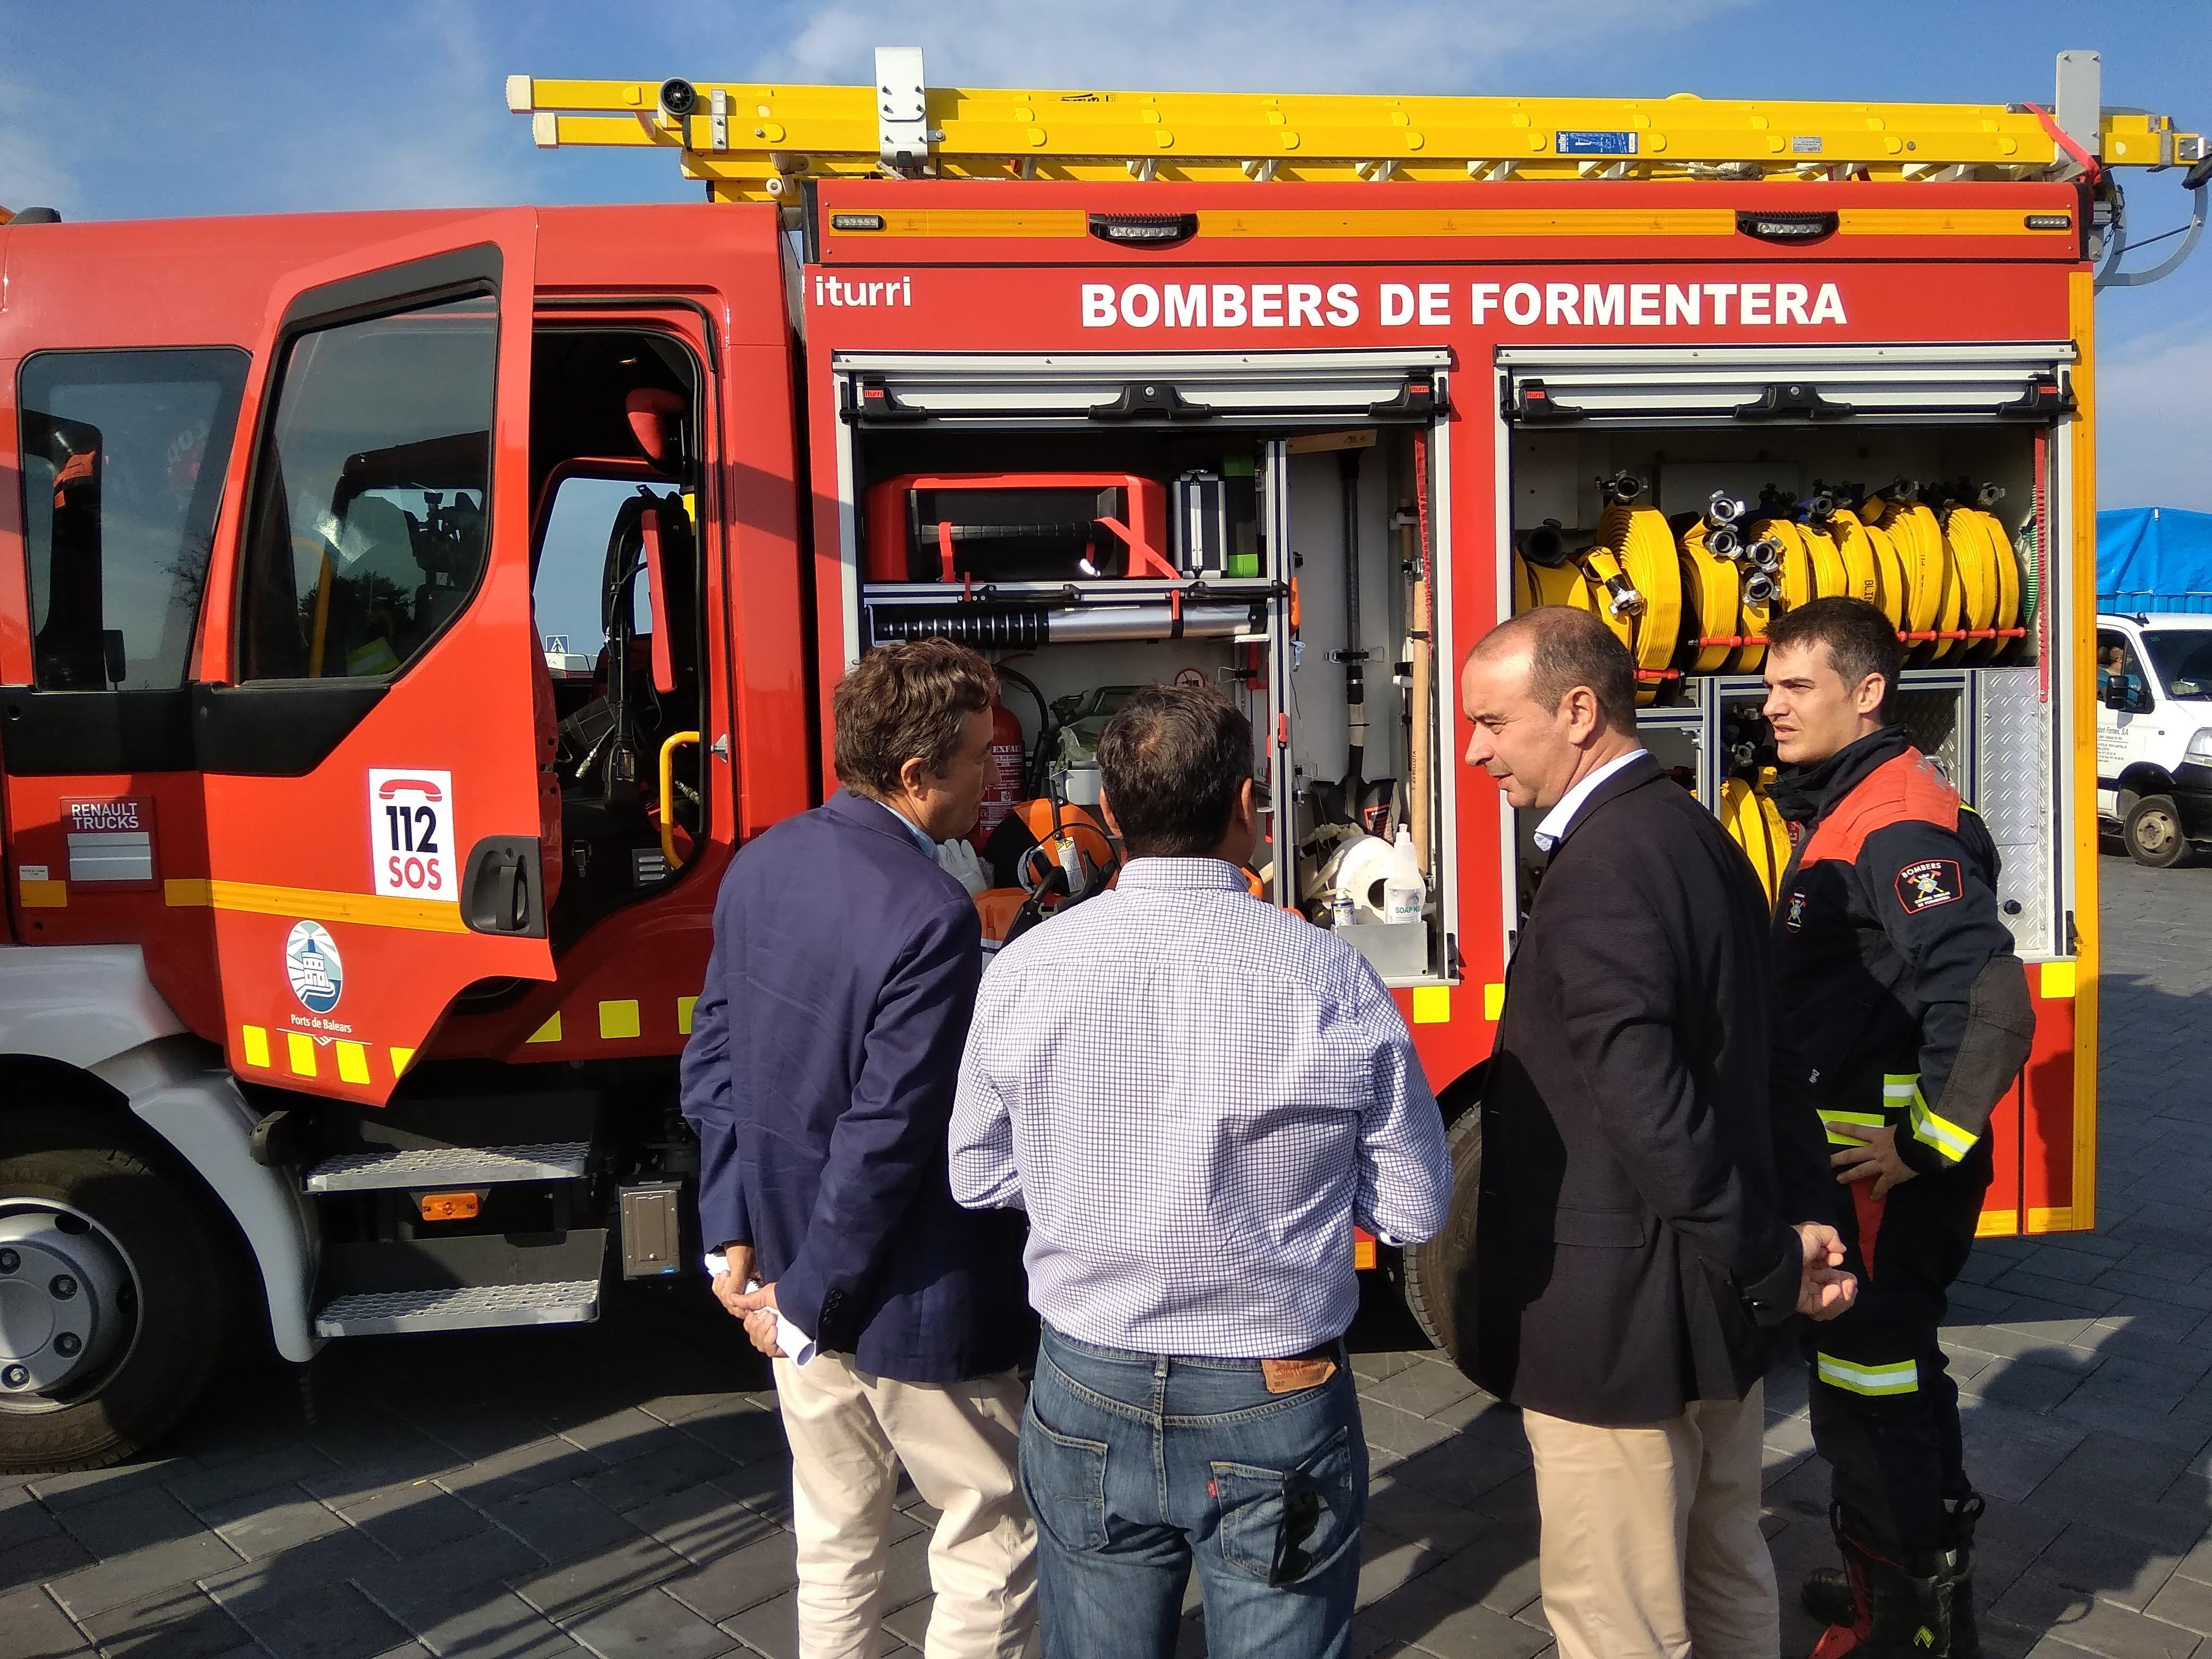 Grundsatzvereinbarung mit dem Inselrat von Formentera zur Aktualisierung des Abkommens für die Berufsfeuerwehr im Hafen La Savina